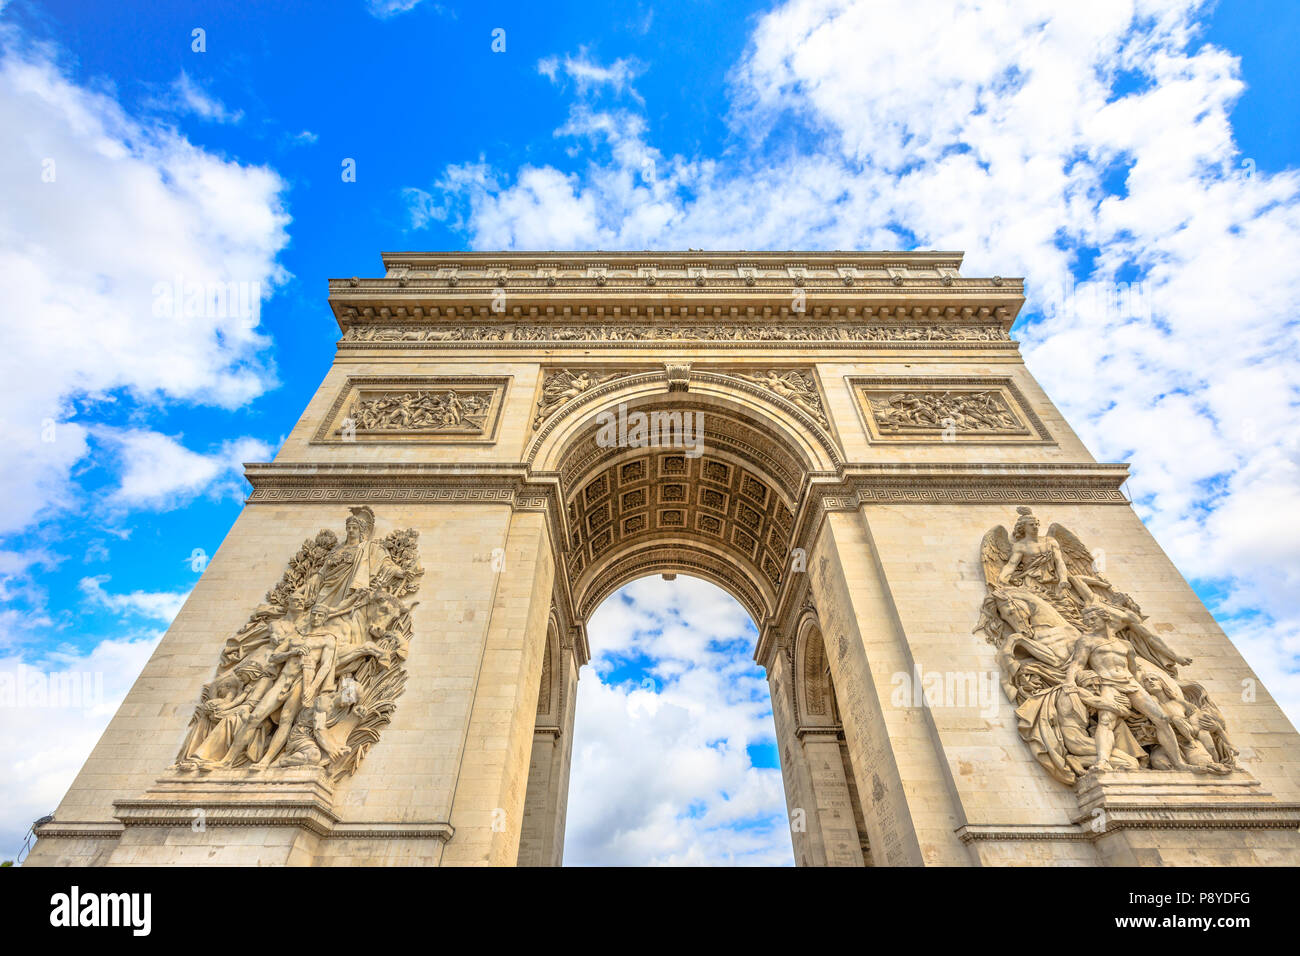 Vista dal basso del Arco di Trionfo al centro di Place Charles de Gaulle con nuvole e cielo blu. Punto di riferimento popolare e famosa attrazione turistica a Parigi capitale della Francia in Europa. Foto Stock